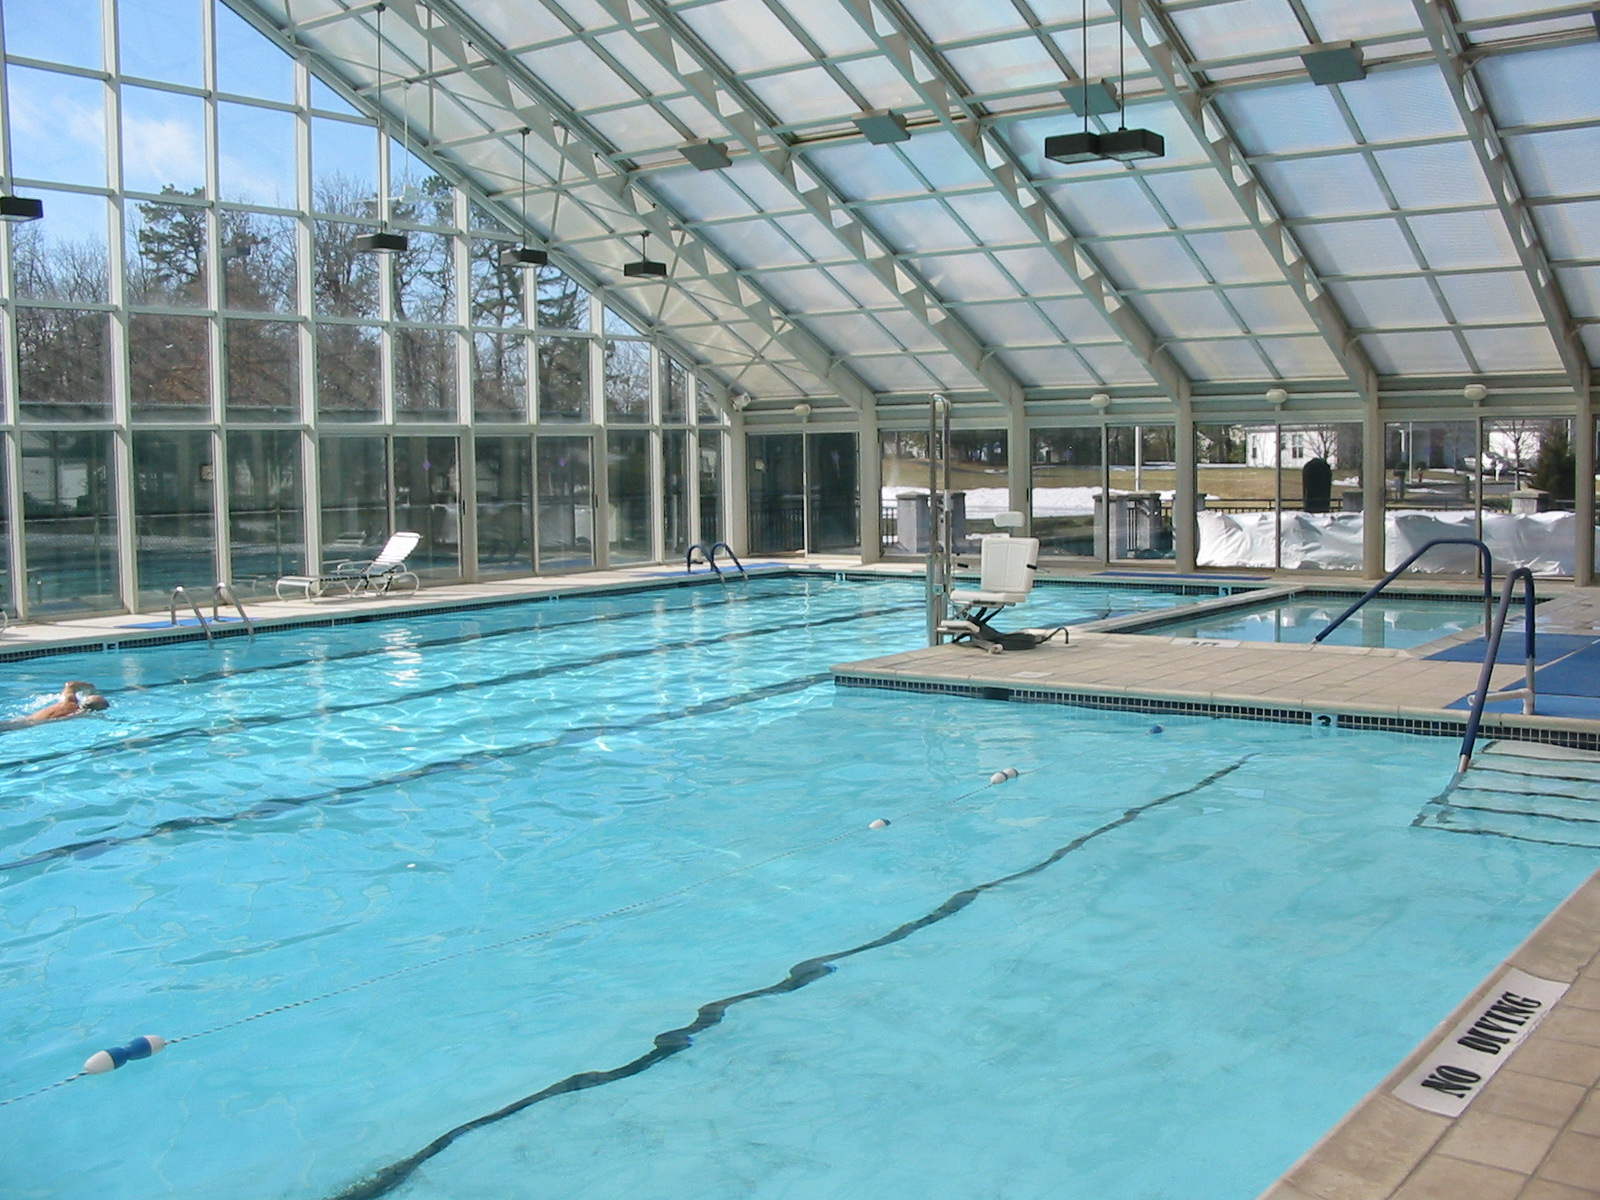 Four Seasons Lakewood Indoor Pool 55 Plus In Ocean